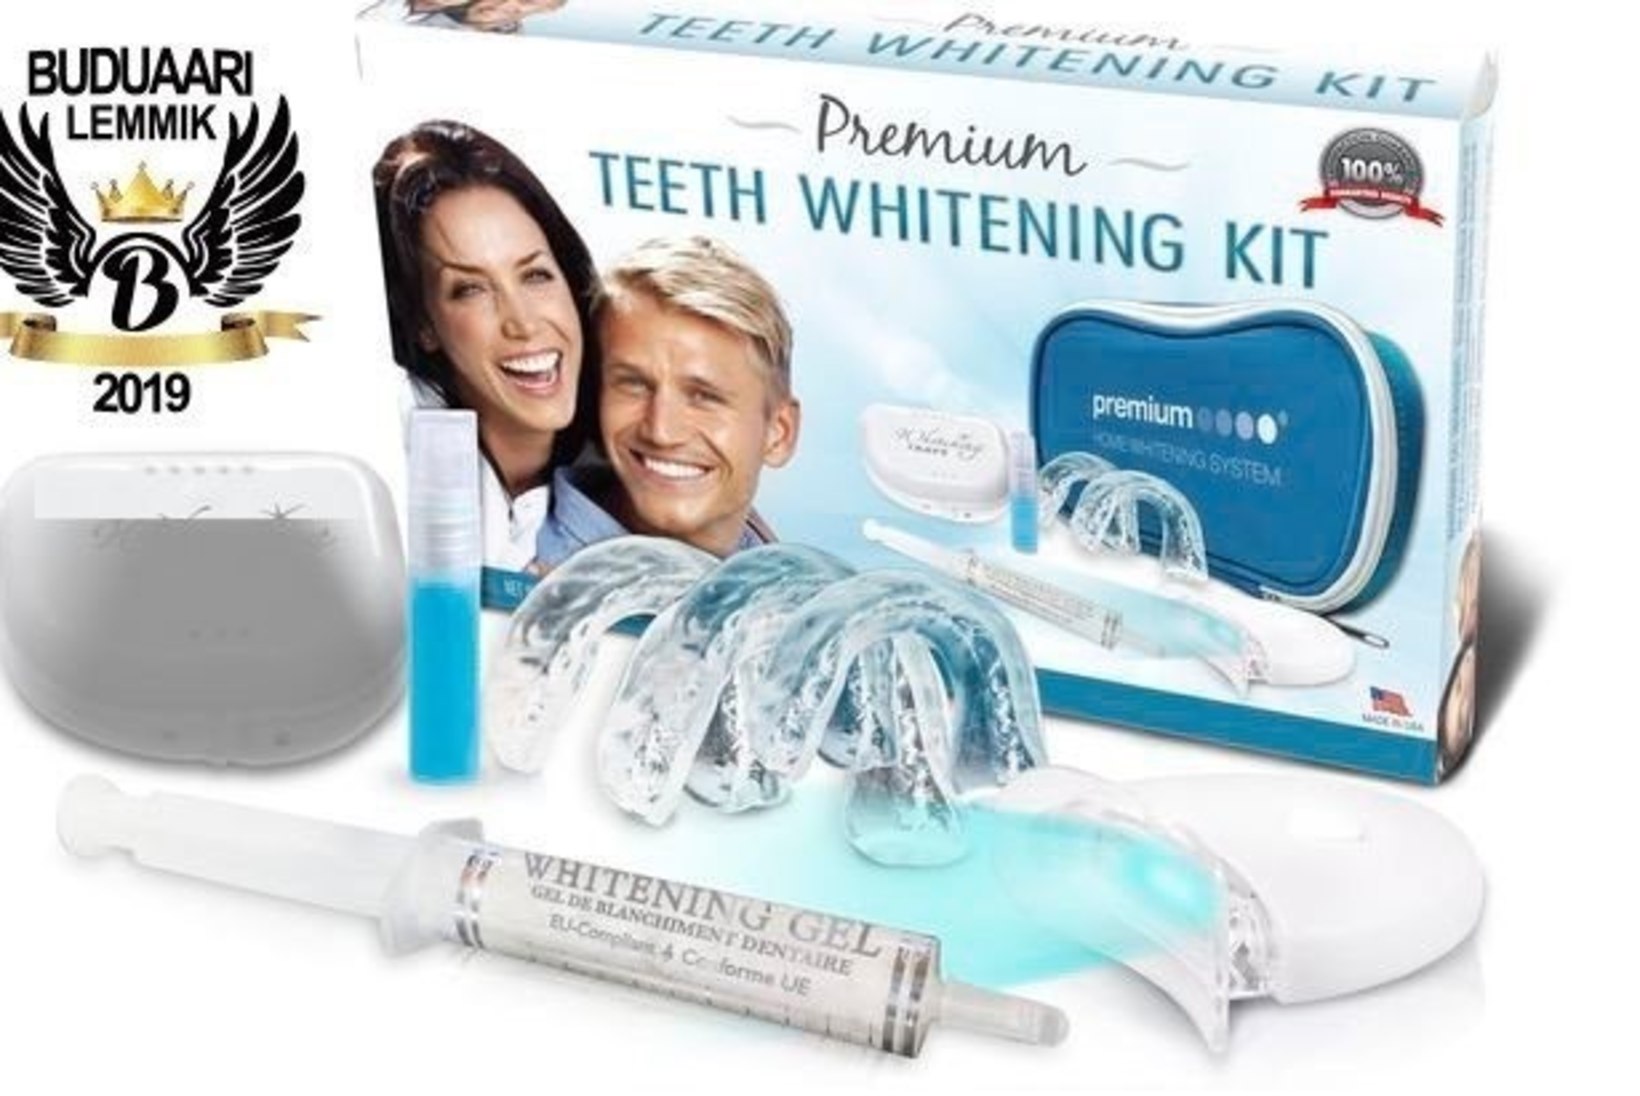 Kuidas saada hambad kodus kaunilt valgeks? Spetsialist annab nõu!